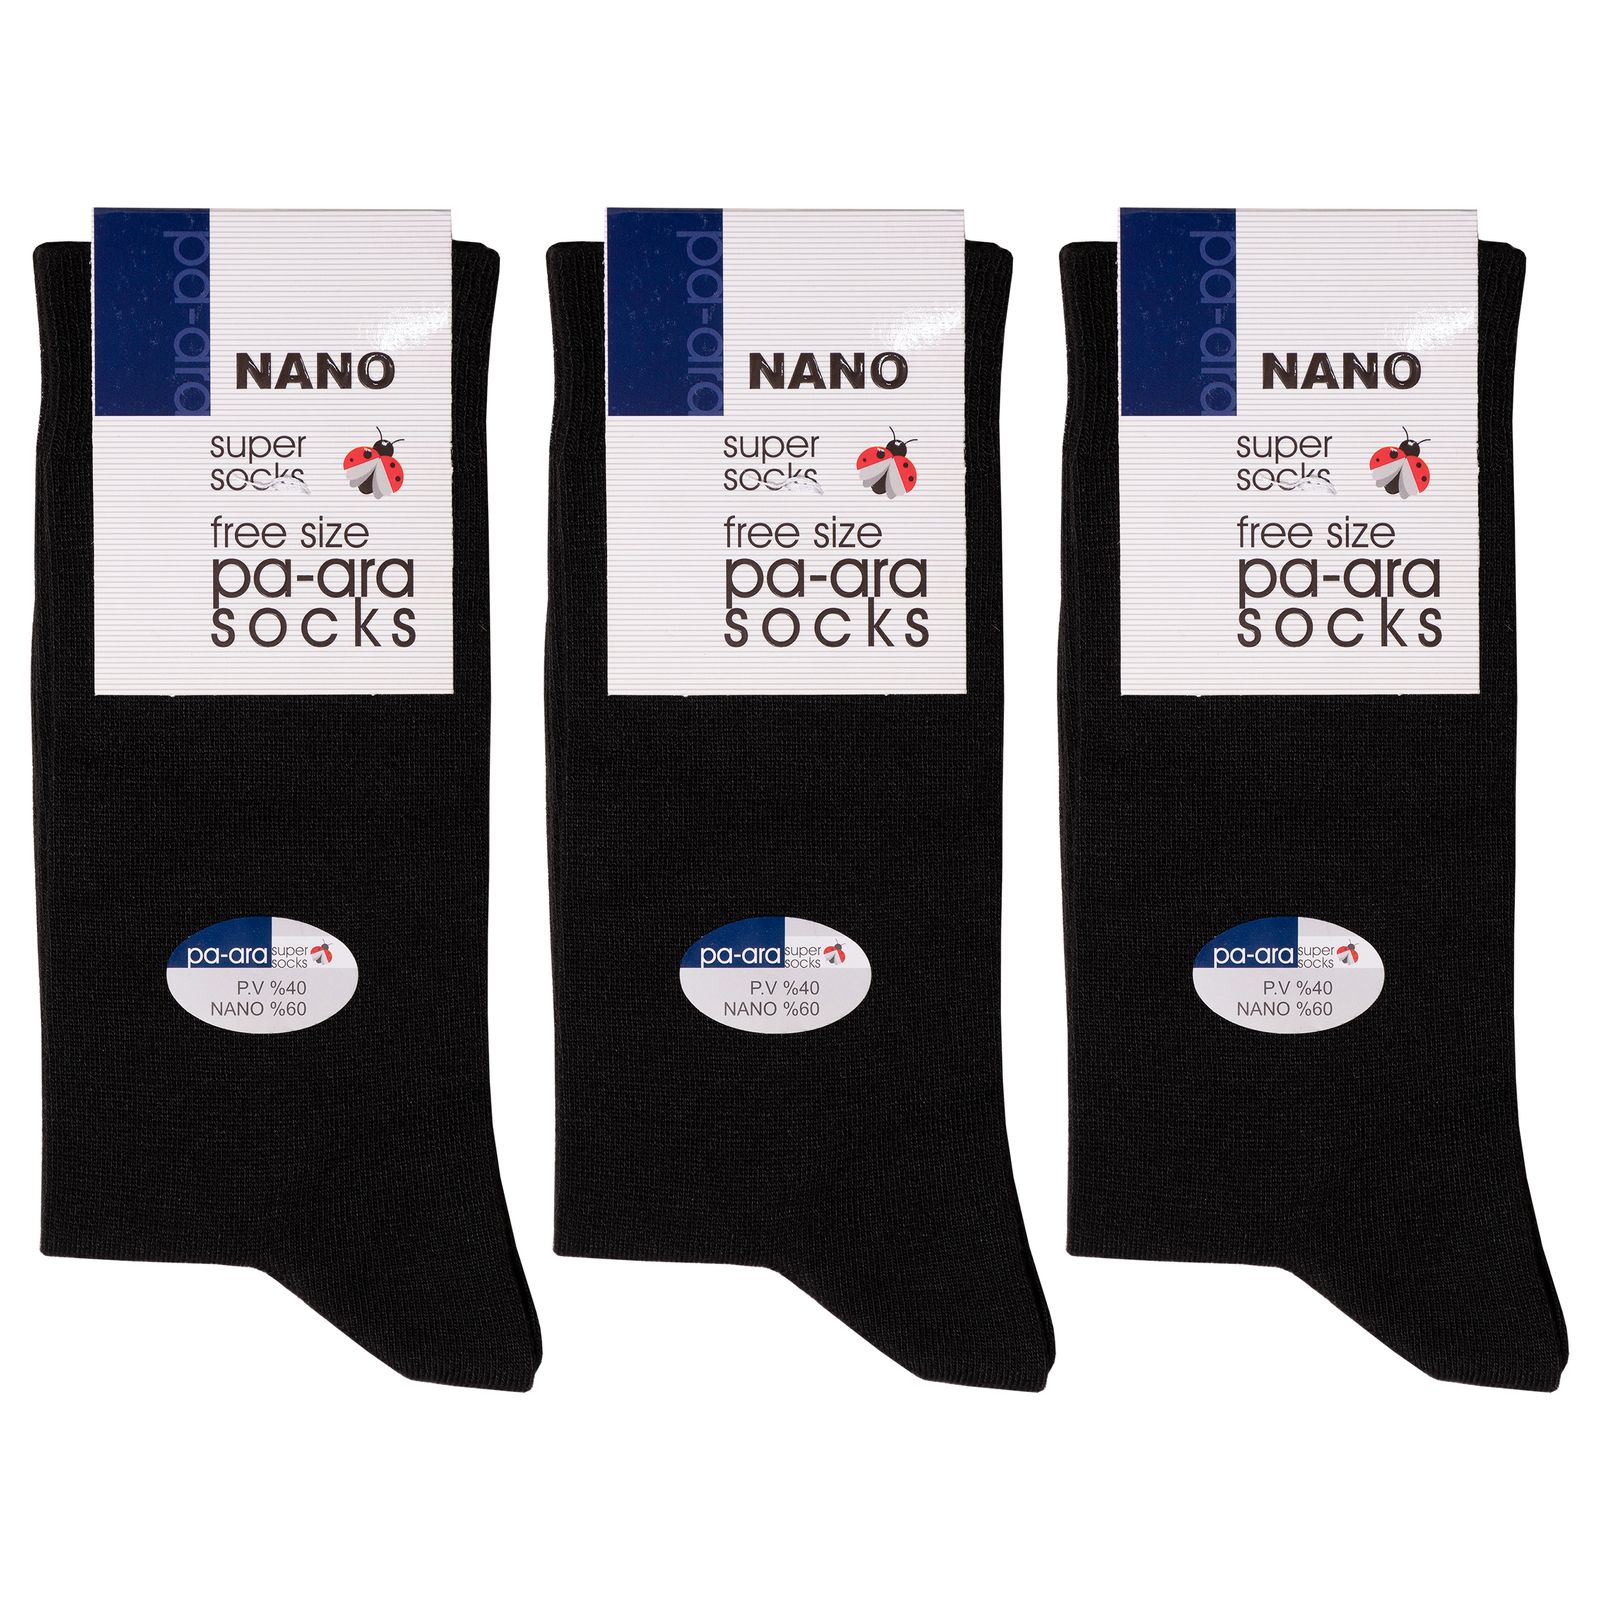 جوراب مردانه پاآرا مدل نانو 60 کد 6009 بسته 3 عددی -  - 1